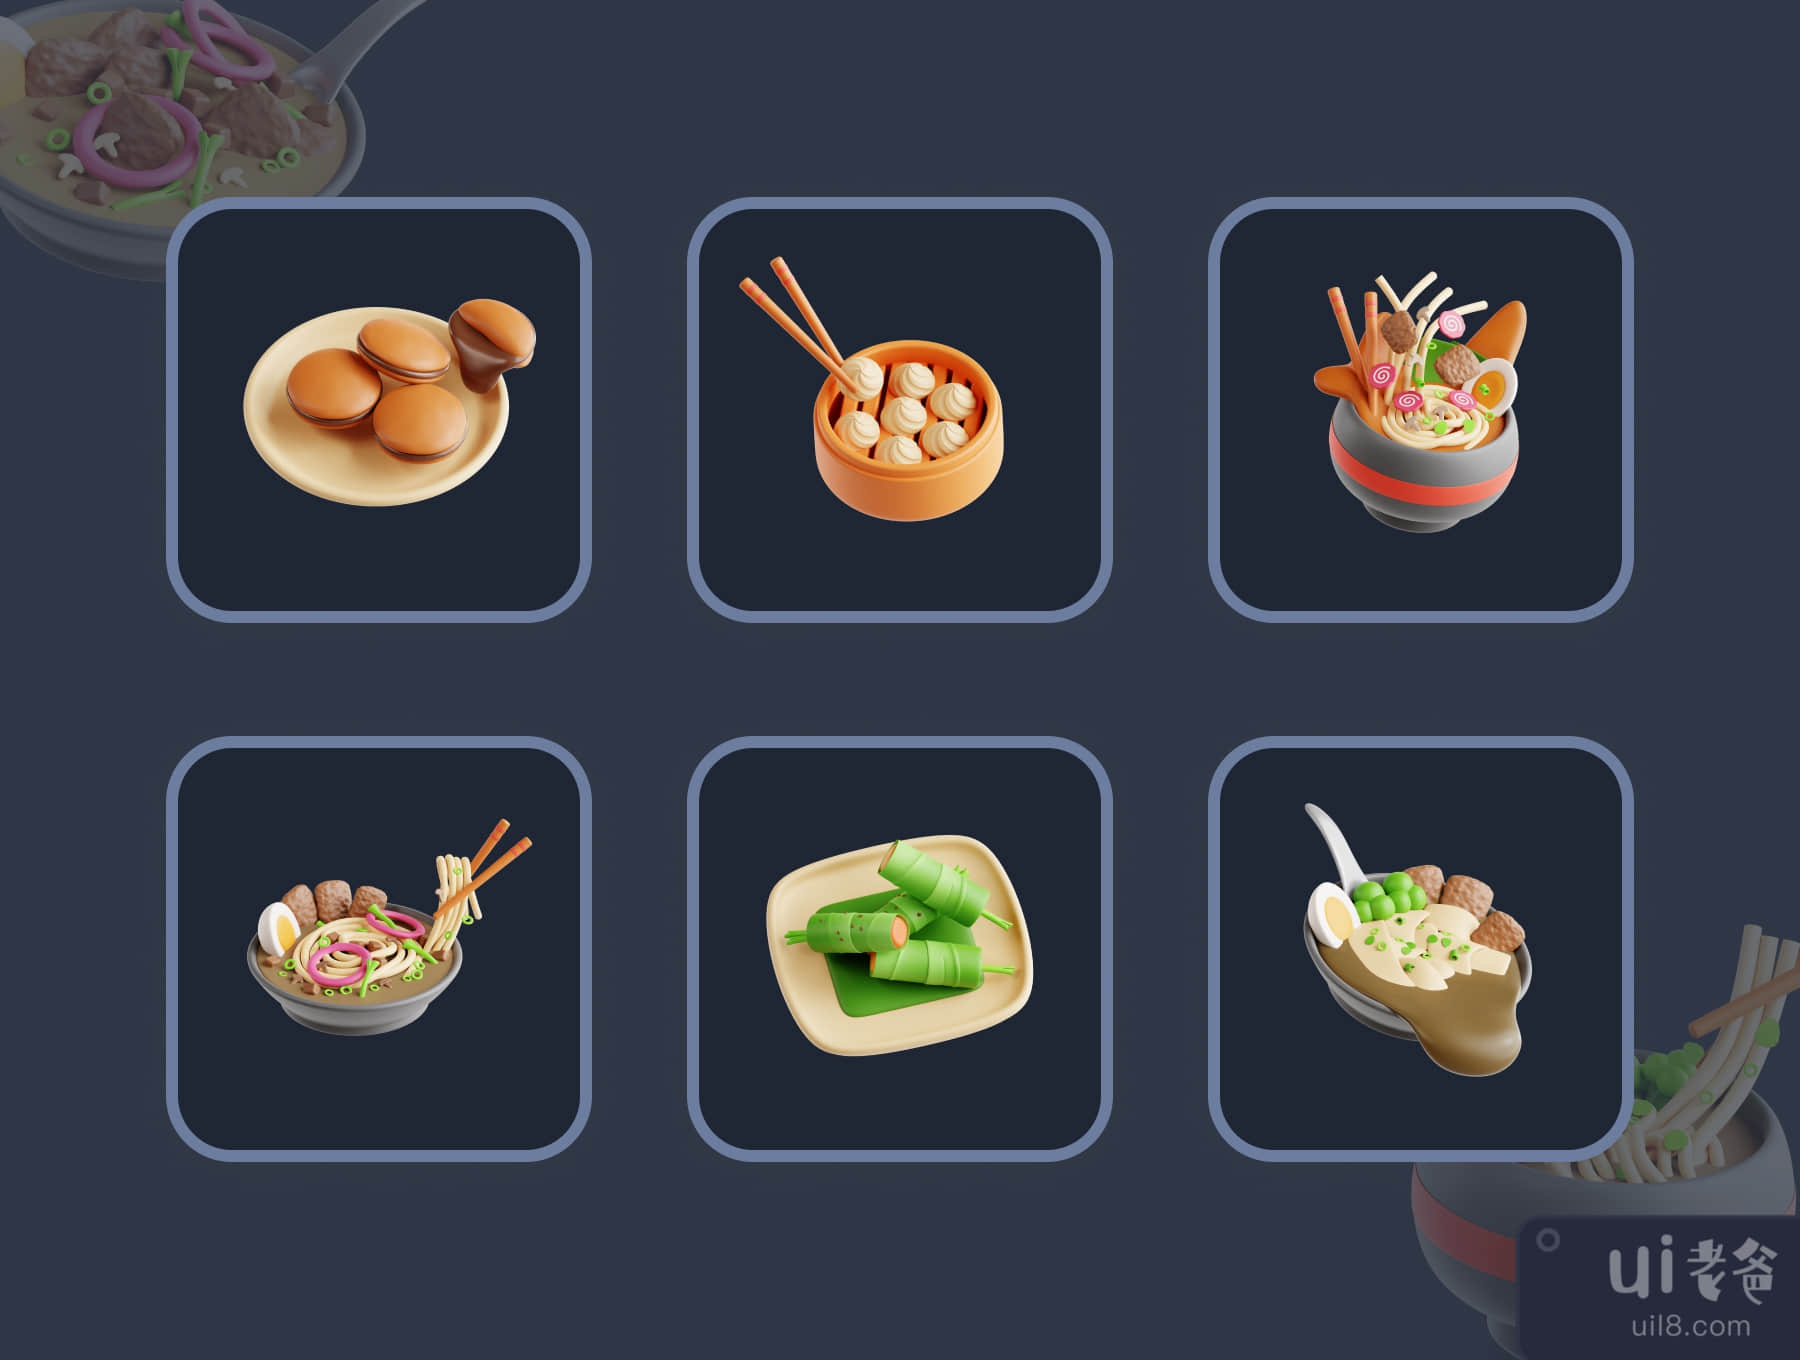 三维亚洲食品 (3D Asian Food)插图5